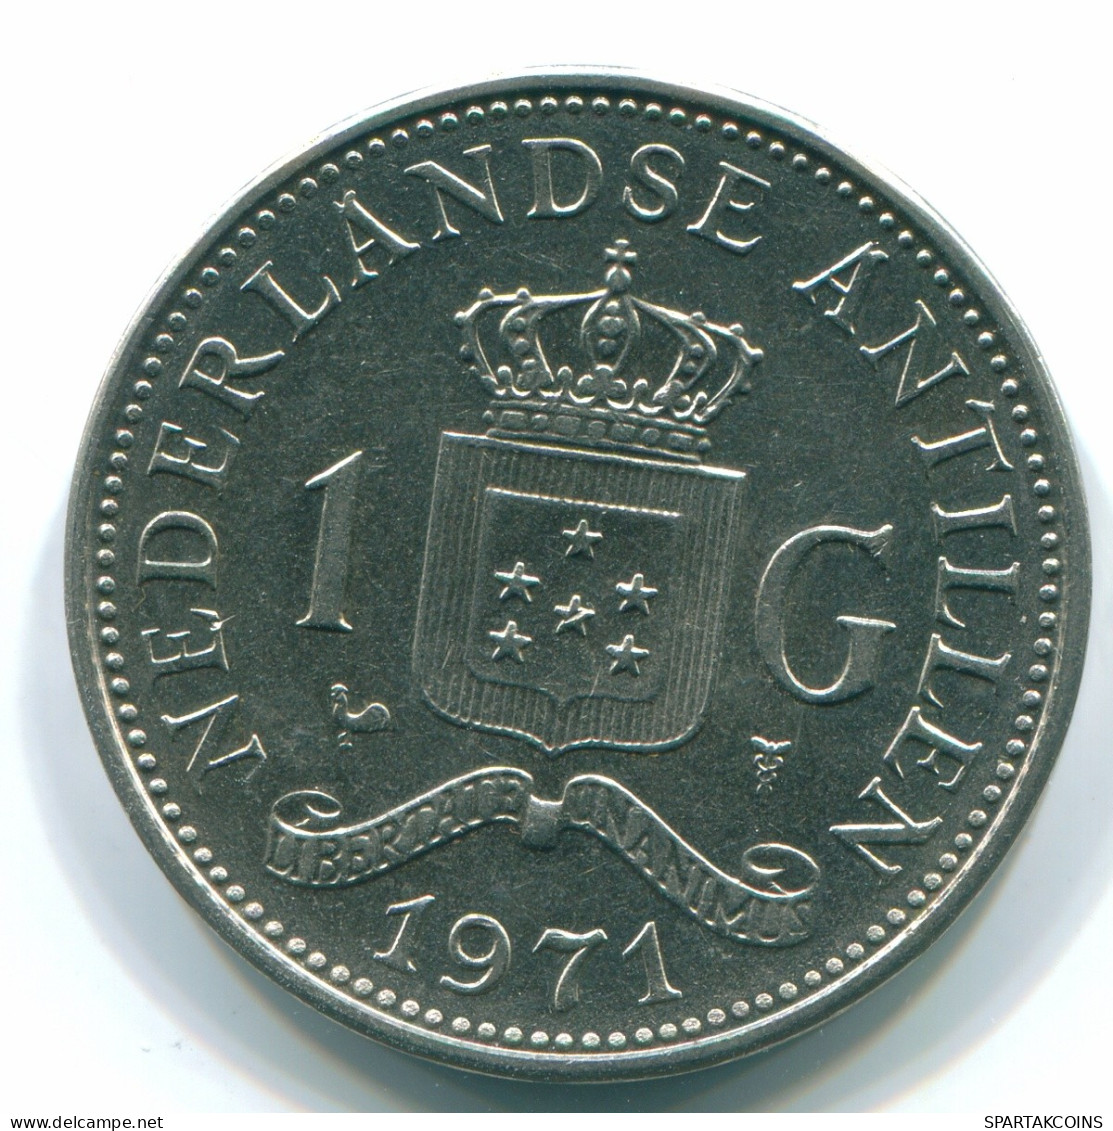 1 GULDEN 1971 NIEDERLÄNDISCHE ANTILLEN Nickel Koloniale Münze #S11993.D.A - Niederländische Antillen